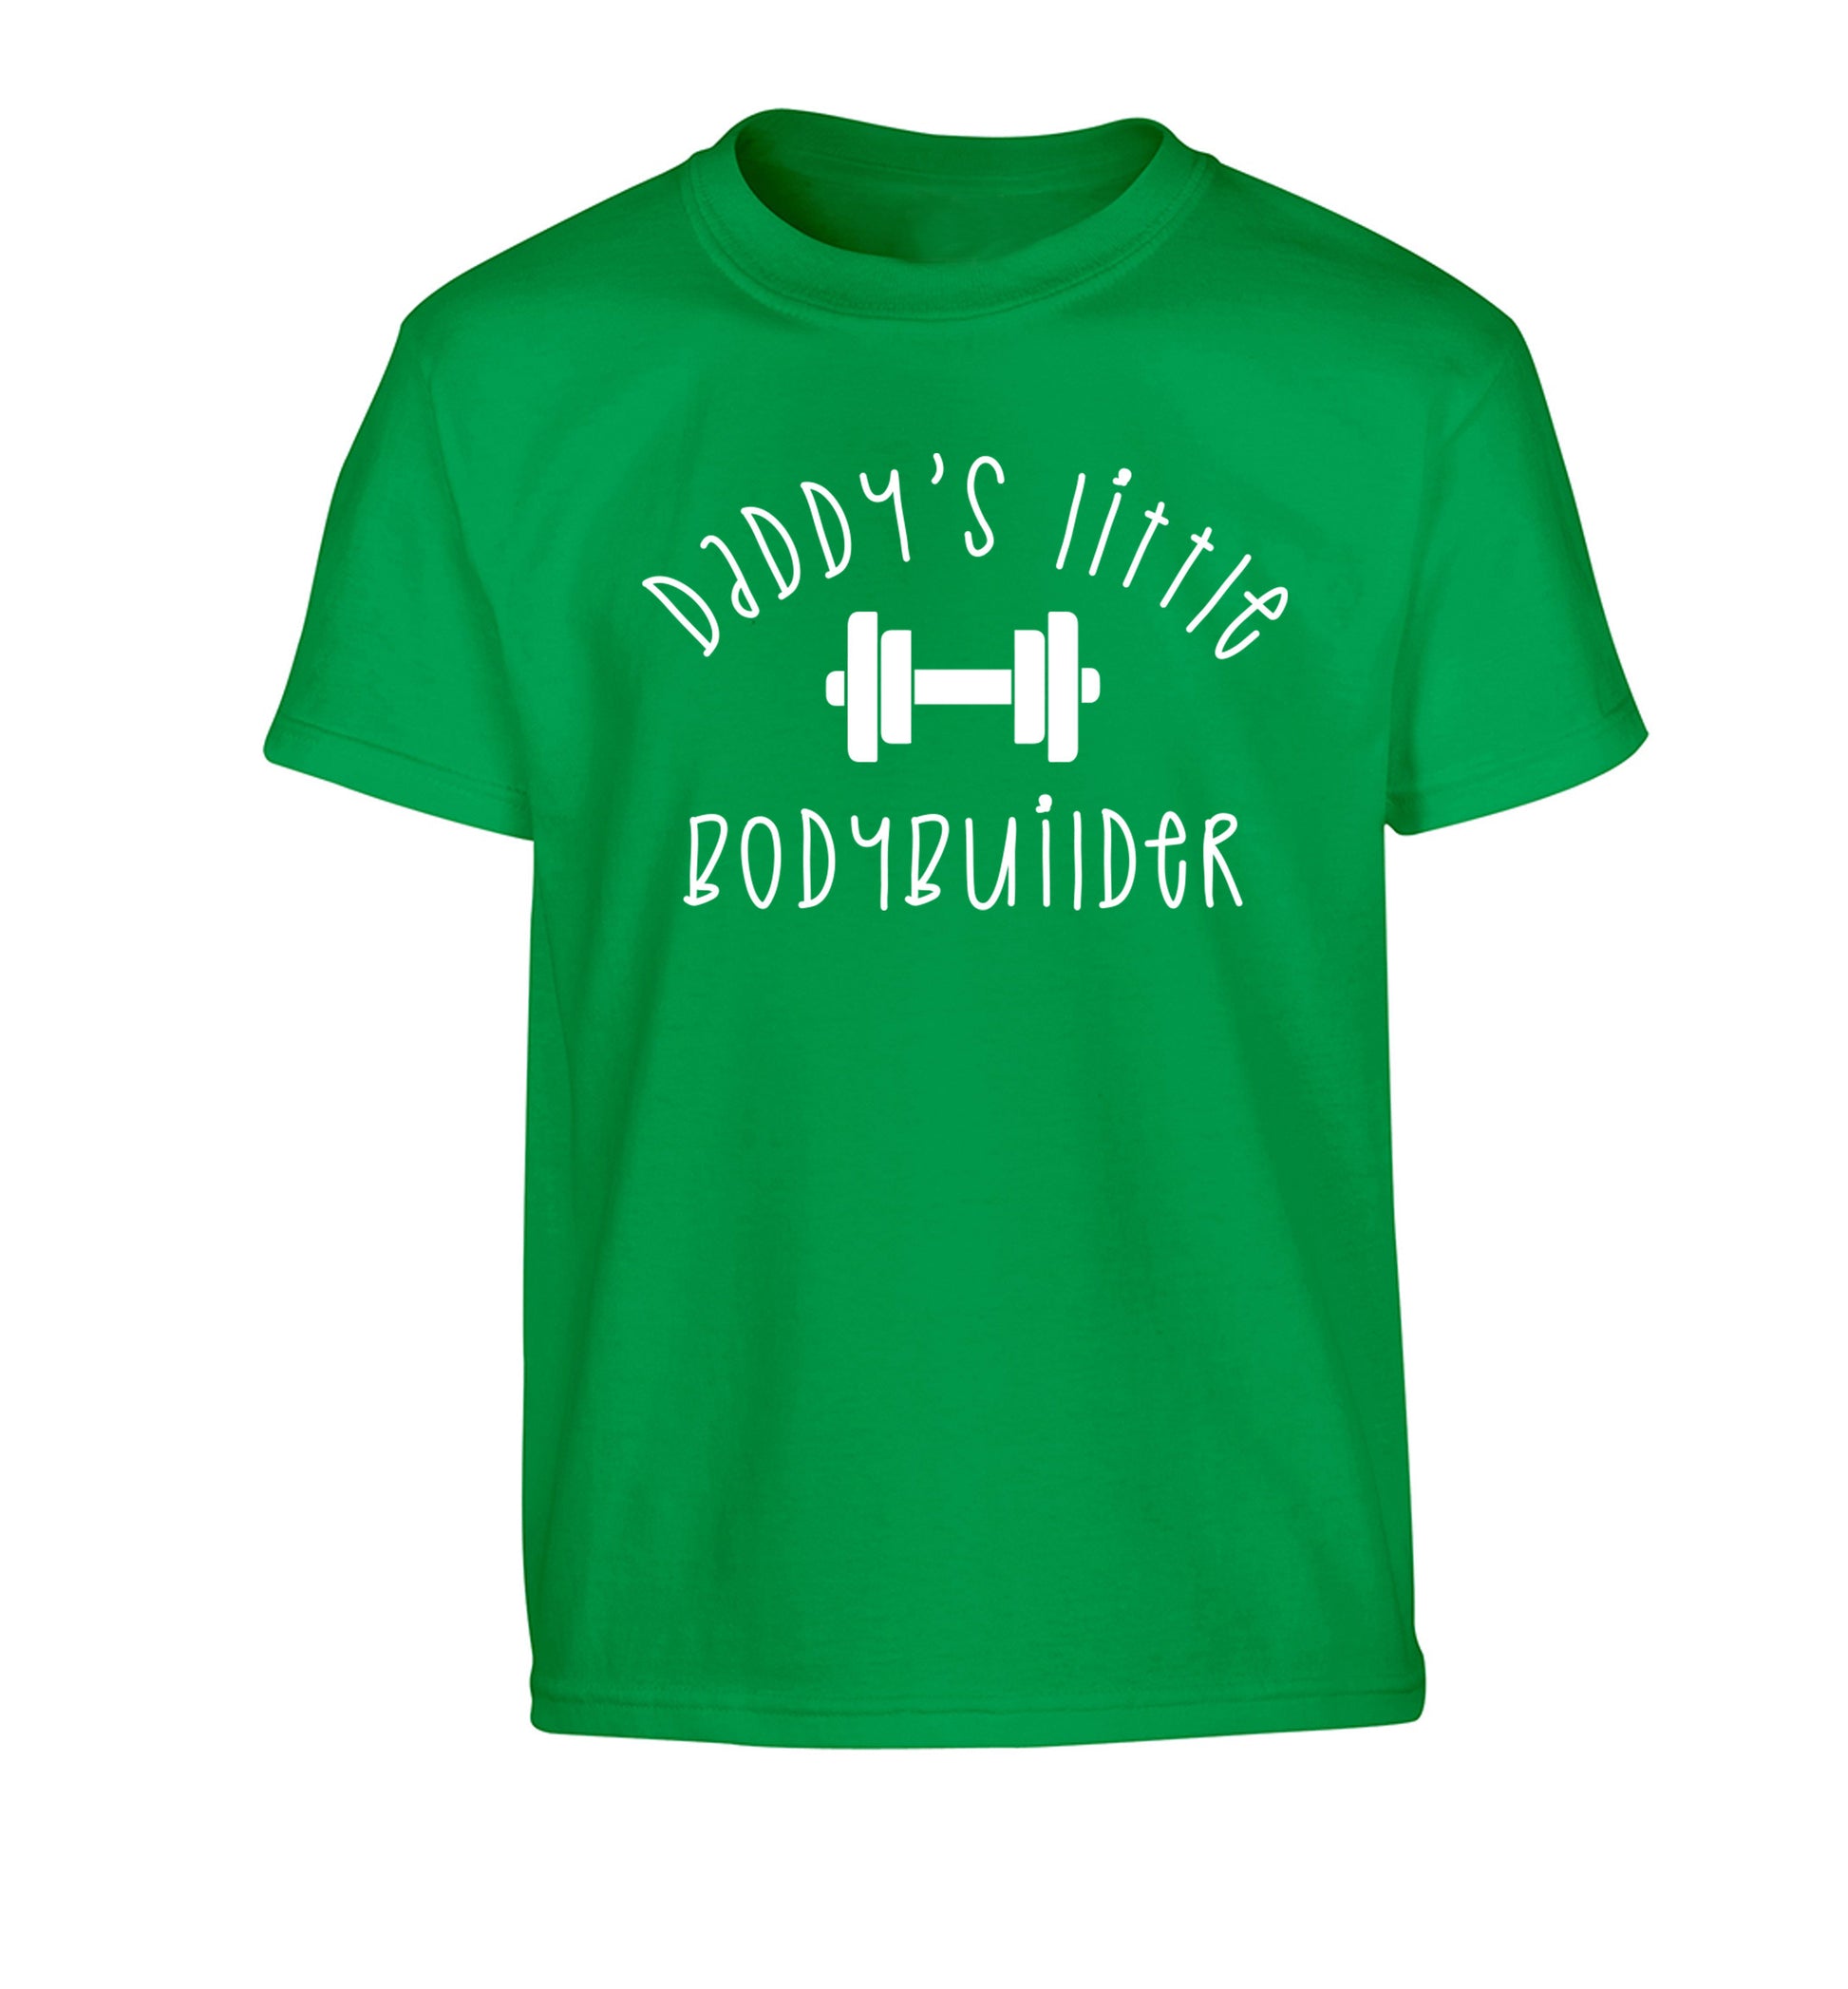 Daddy's little bodybuilder Children's green Tshirt 12-14 Years